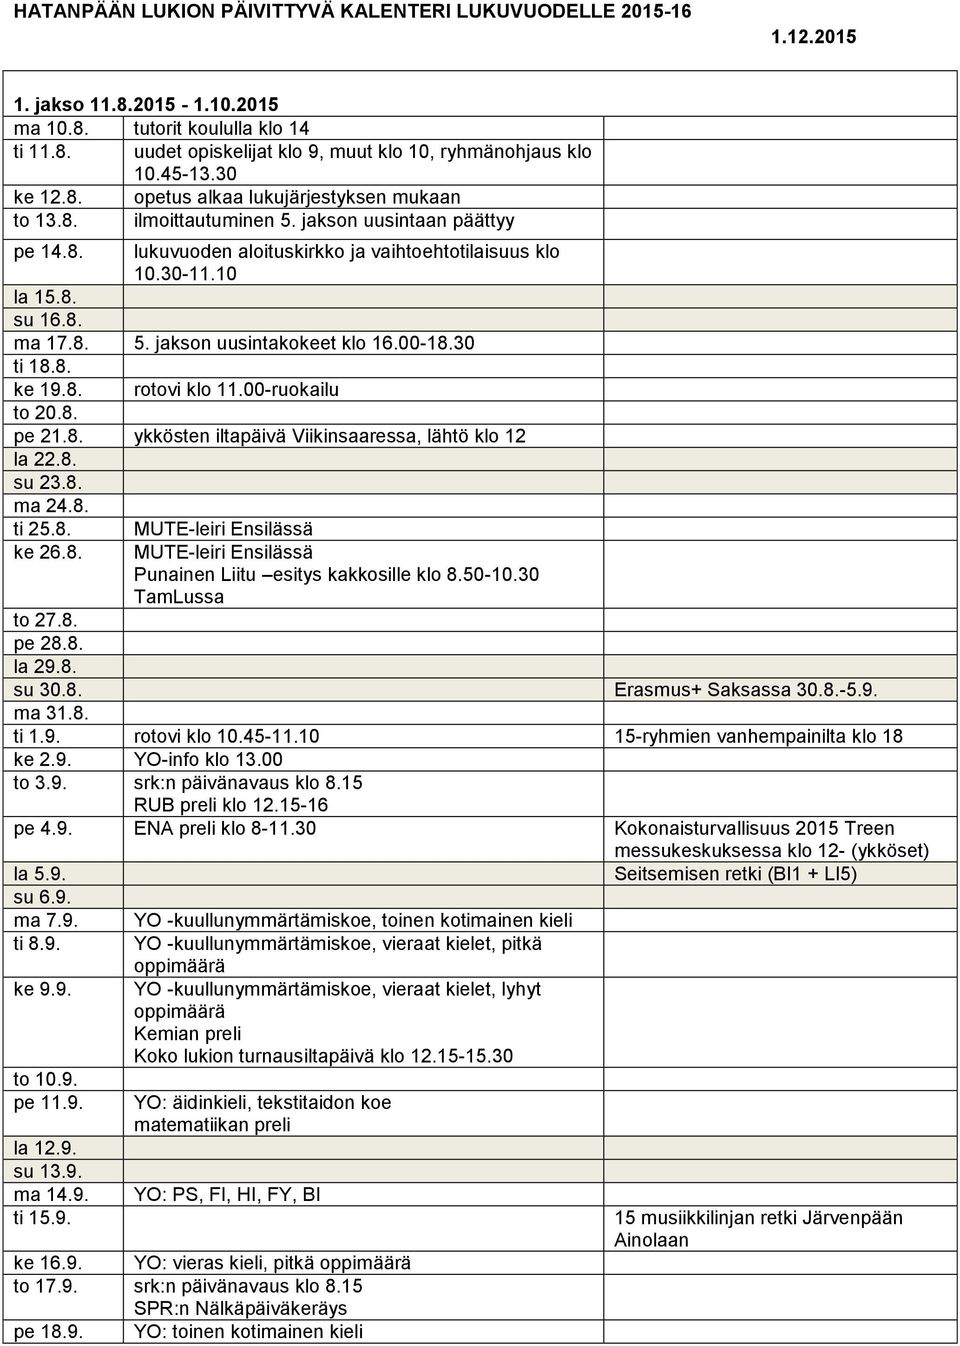 8. 5. jakson uusintakokeet klo 16.00-18.30 ti 18.8. ke 19.8. rotovi klo 11.00-ruokailu to 20.8. pe 21.8. ykkösten iltapäivä Viikinsaaressa, lähtö klo 12 la 22.8. su 23.8. ma 24.8. ti 25.8. ke 26.8. MUTE-leiri Ensilässä MUTE-leiri Ensilässä Punainen Liitu esitys kakkosille klo 8.